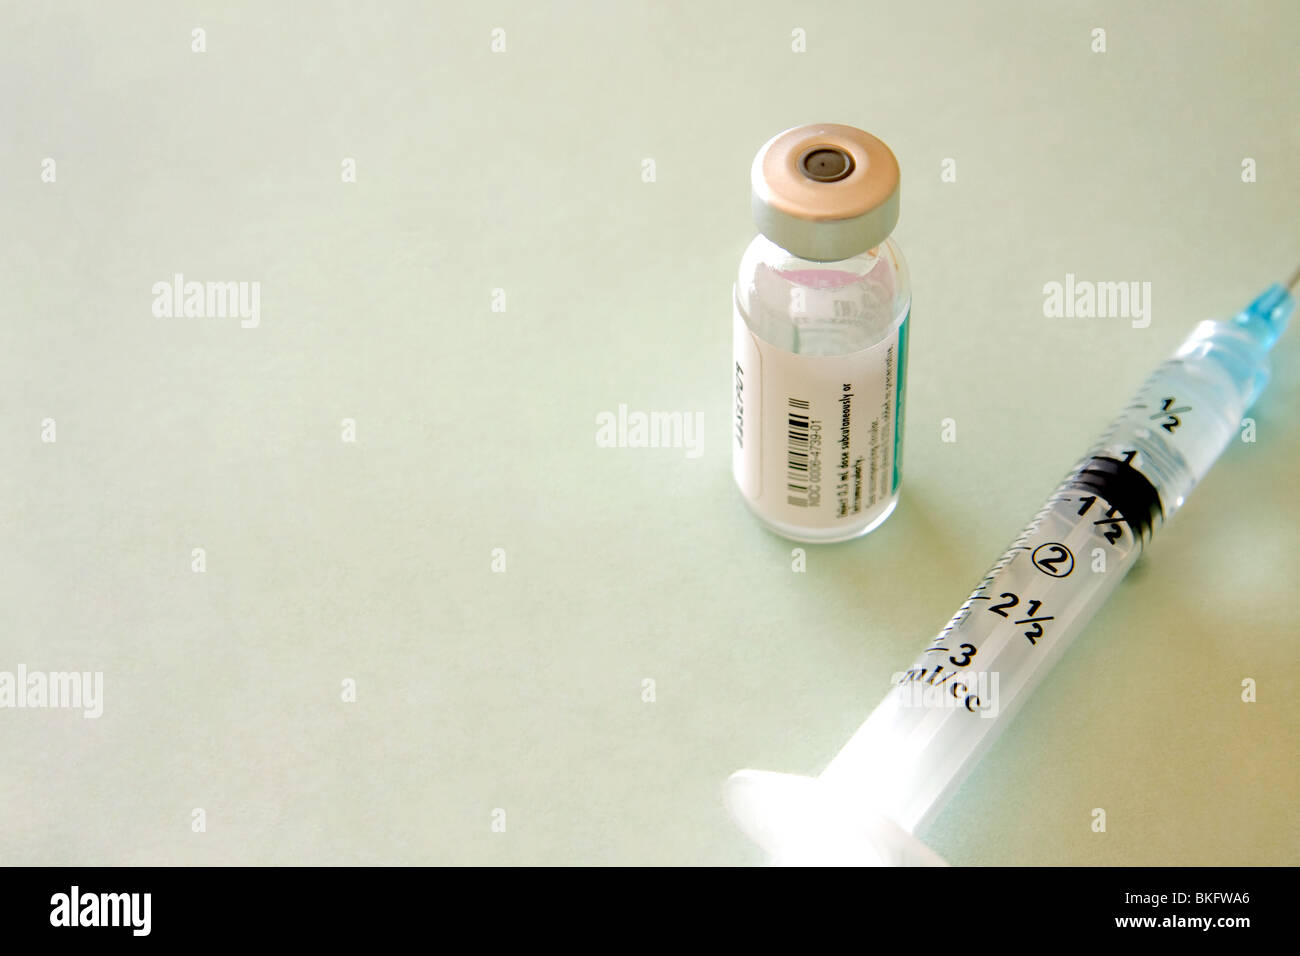 Vaccine with syringe Stock Photo